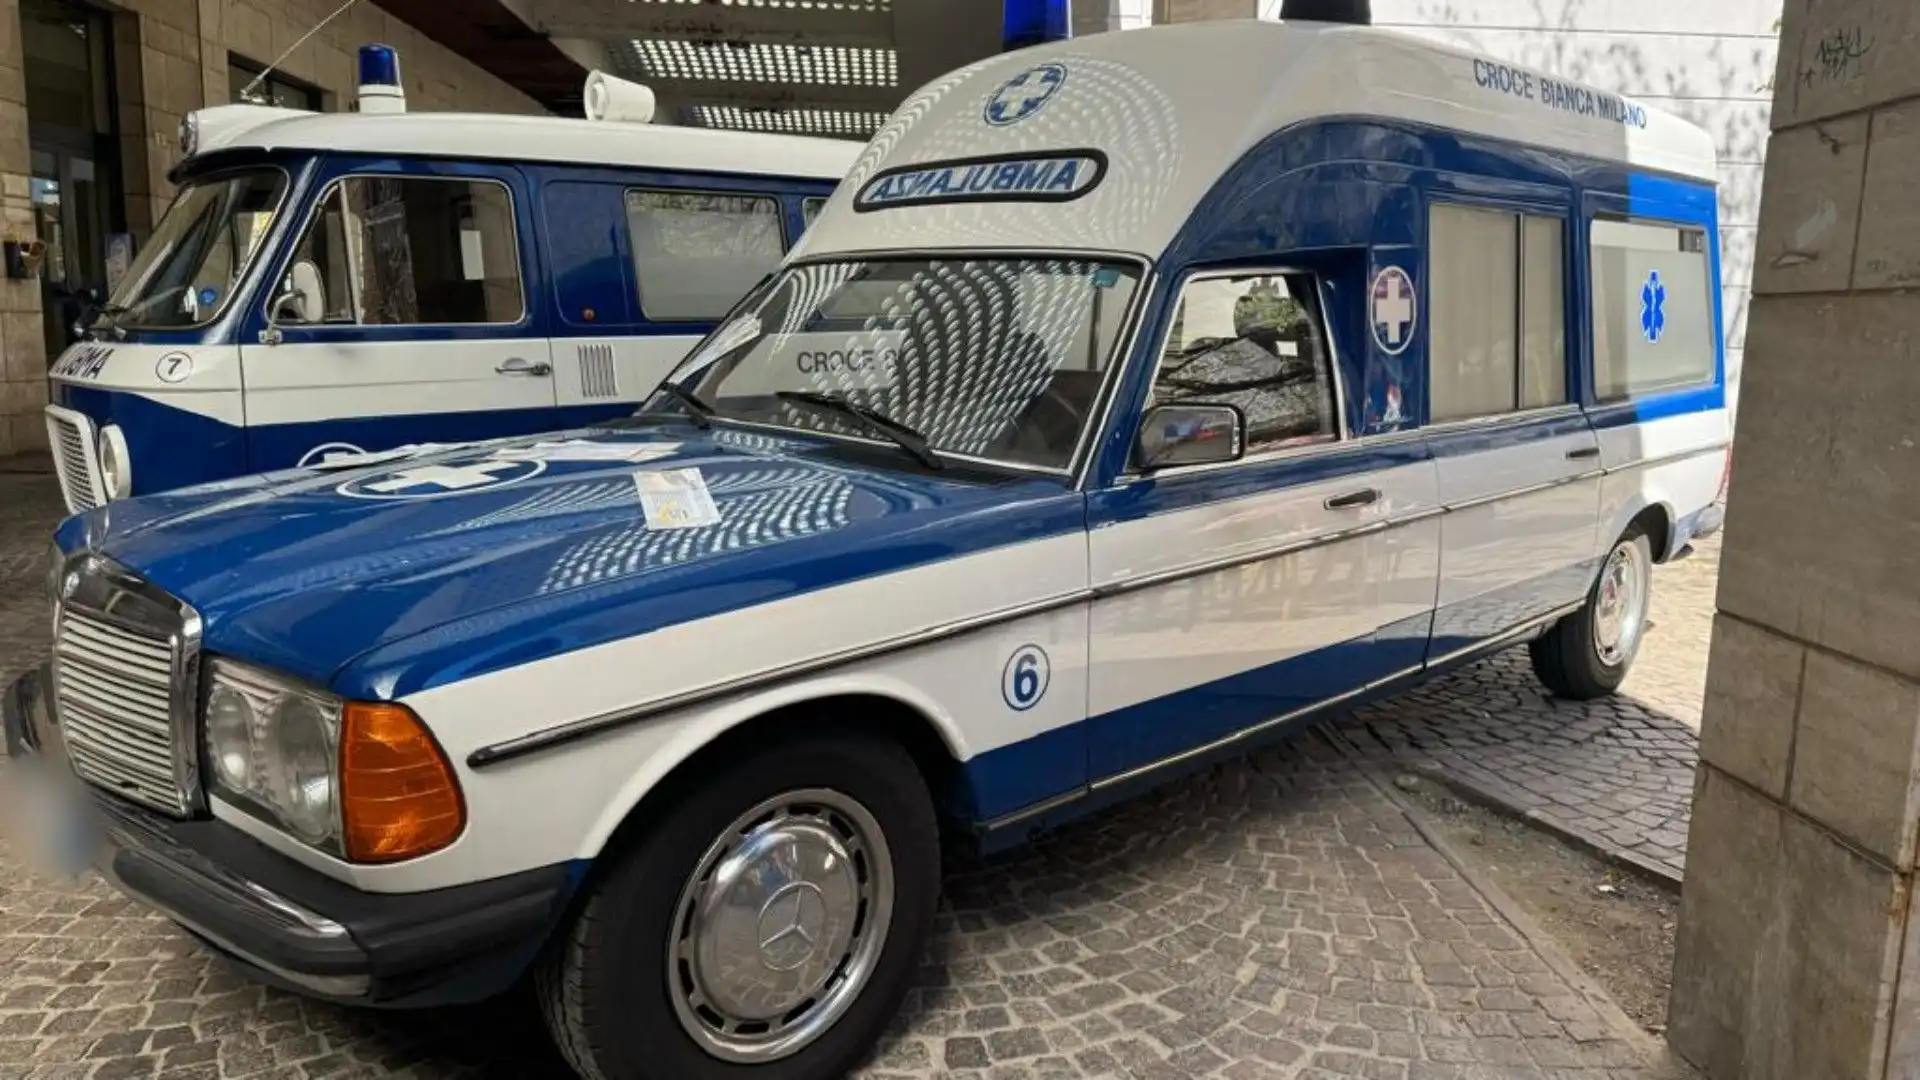 Questa splendida ambulanza ha più di 40 anni: le foto